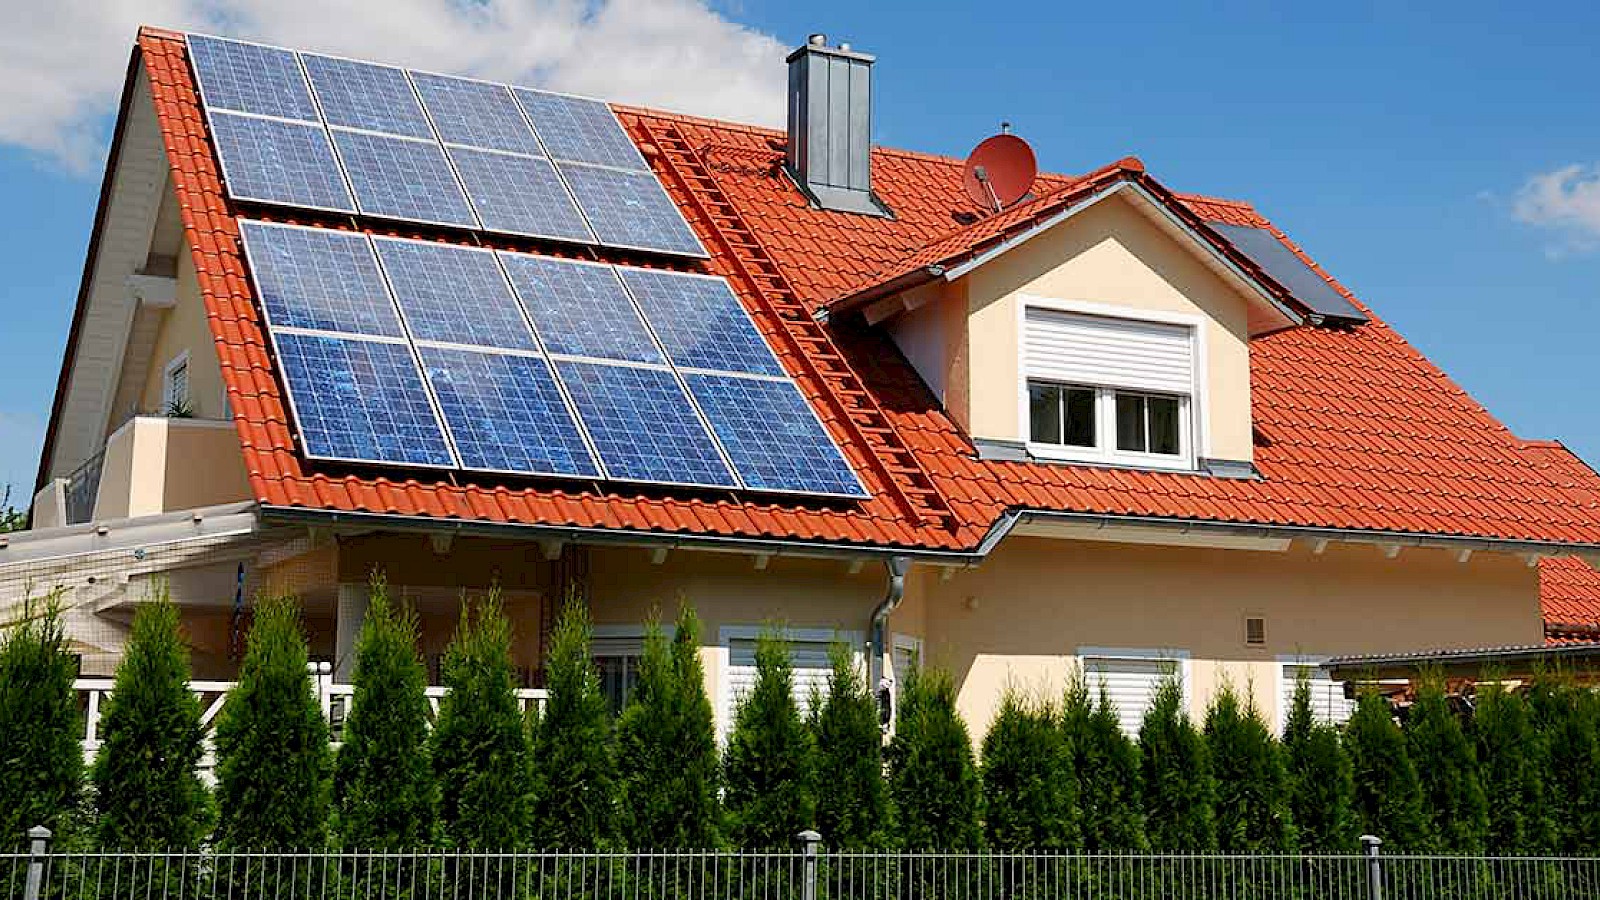 Jetzt den Immobilienwert mit günstigeren Solaranlagen erhöhen!